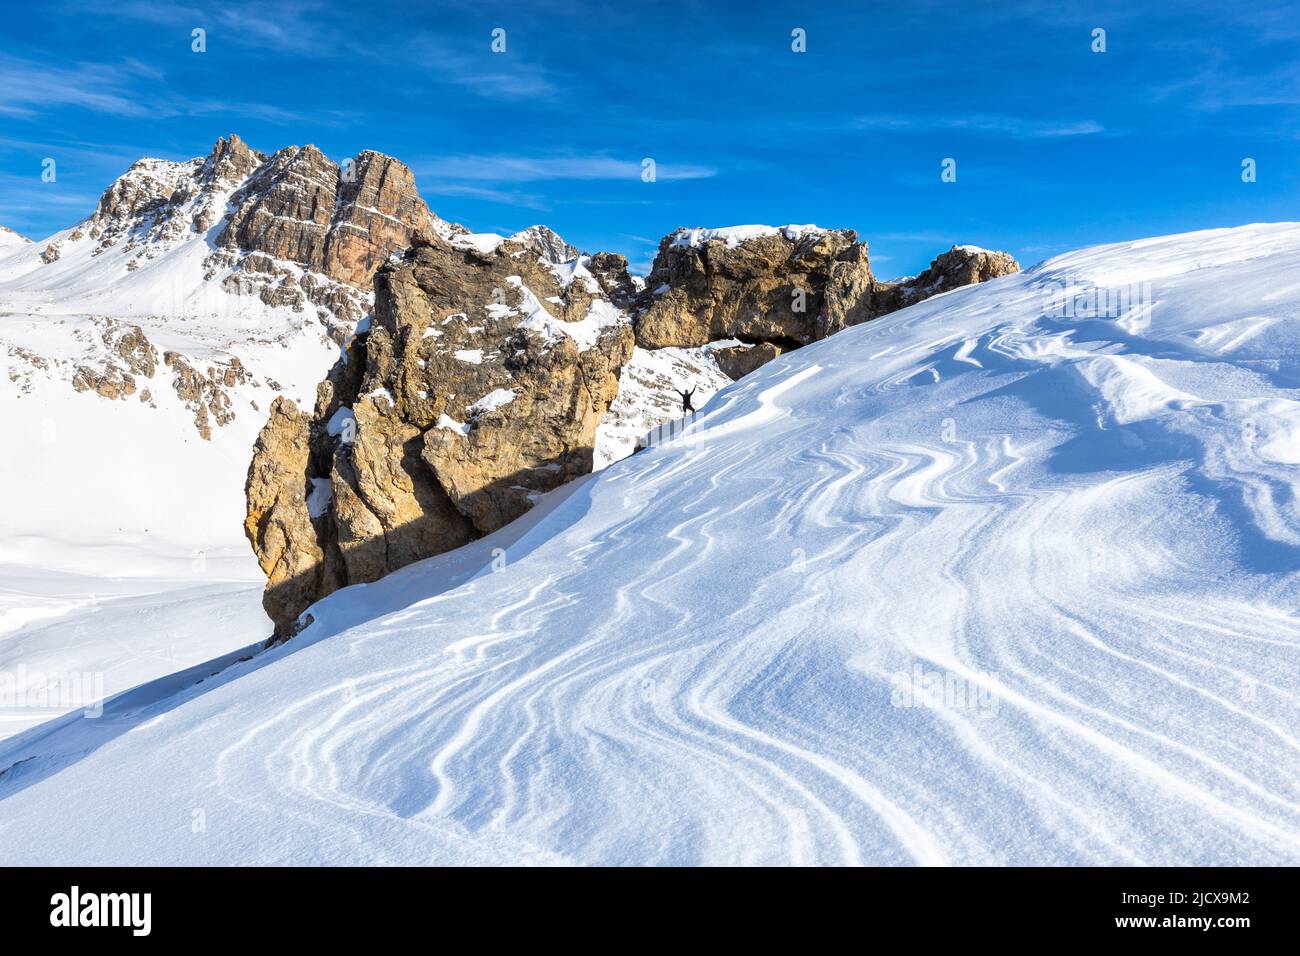 Una persona e arco di roccia naturale con neve a forma di vento in primo piano, passo Julier, Graubunden, Svizzera, Europa Foto Stock